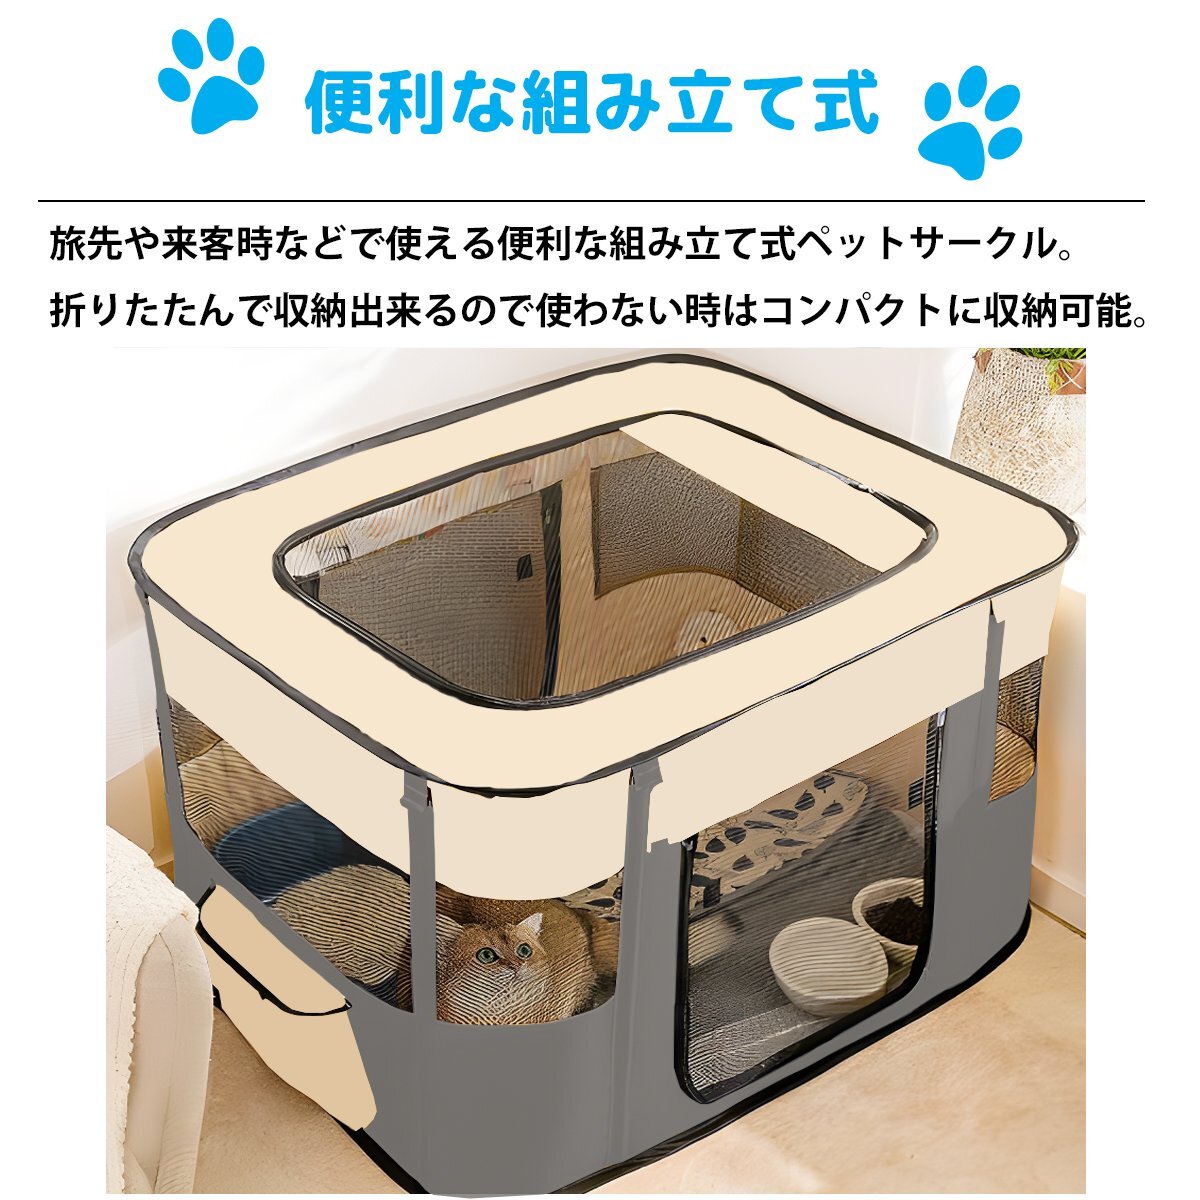 1 иен ~ распродажа XL размер домашнее животное house складной мера собака кошка собака для bed кошка для bed собака house домик для кошек закрытый наружный PS-07GL